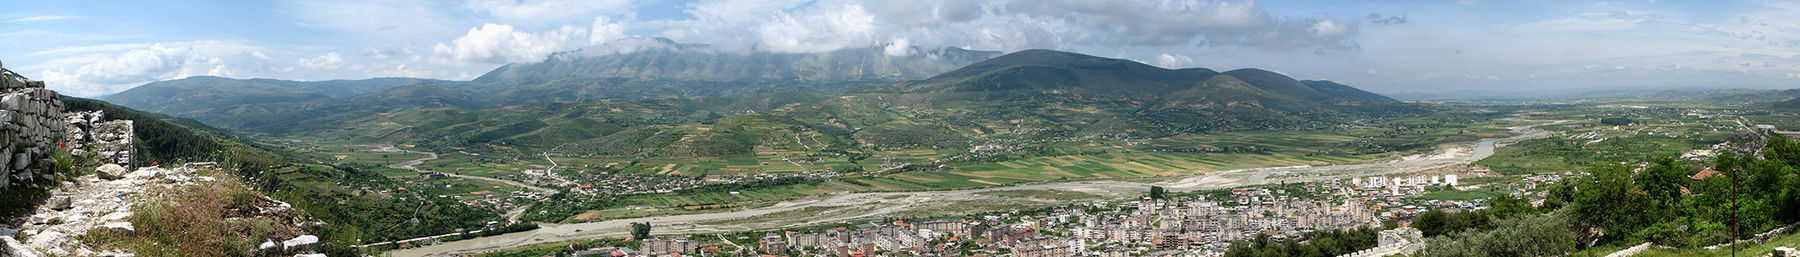 Albanië banner.jpg